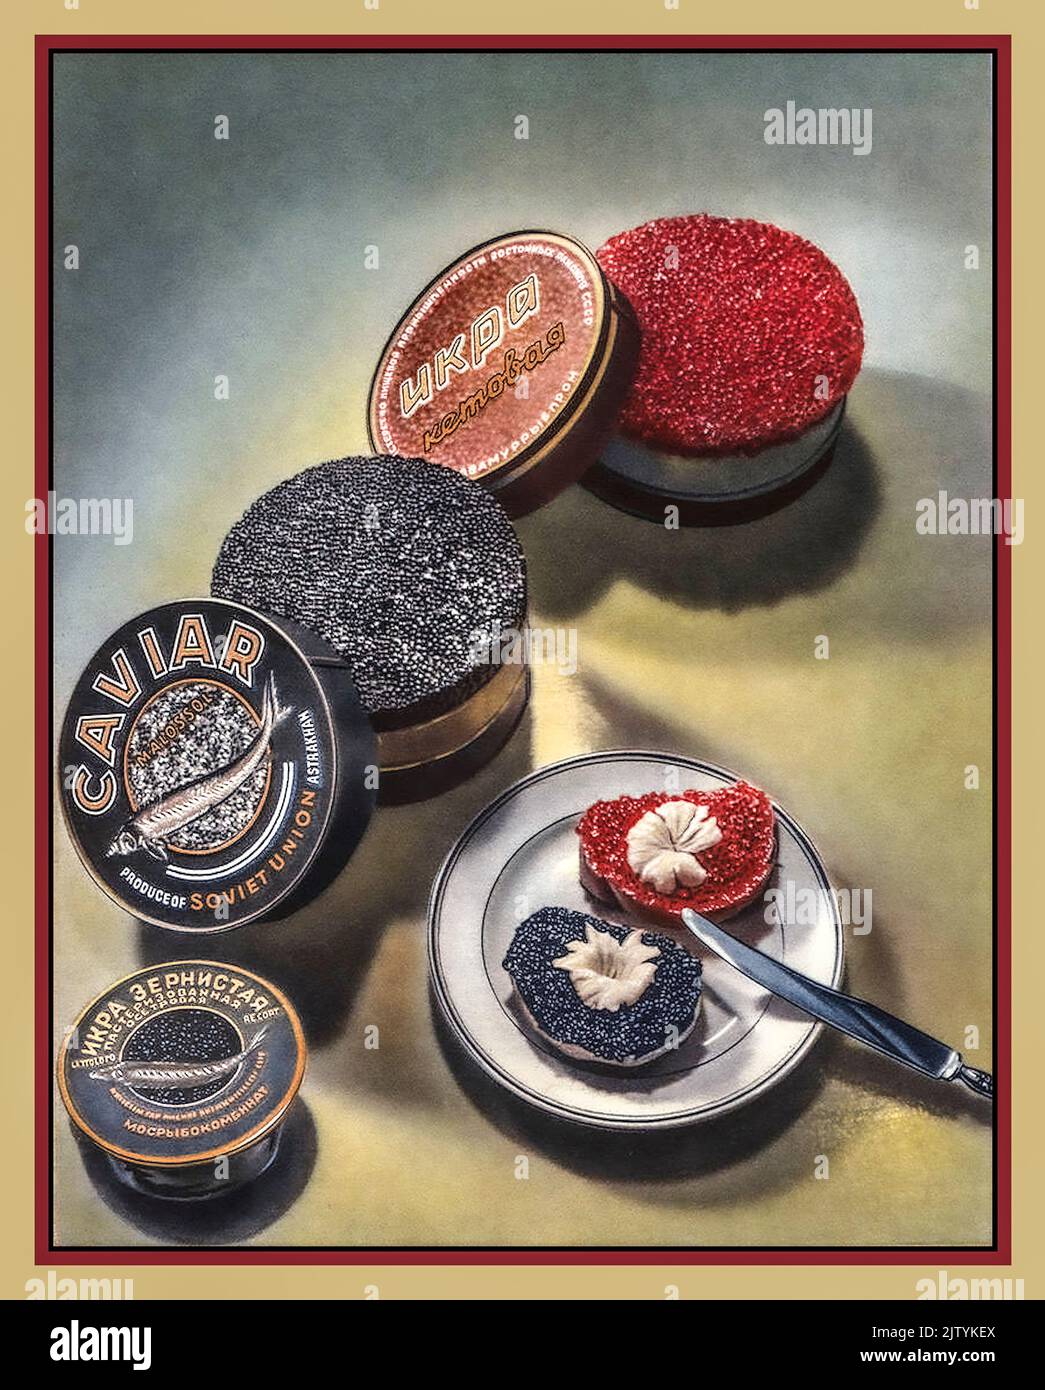 CAVIAR Vintage 1950s Union soviétique Publicité Poster Caviar luxe rouge et noir variétés dans les boîtes russe spécialité poisson denrées alimentaires. Rare et très cher Banque D'Images